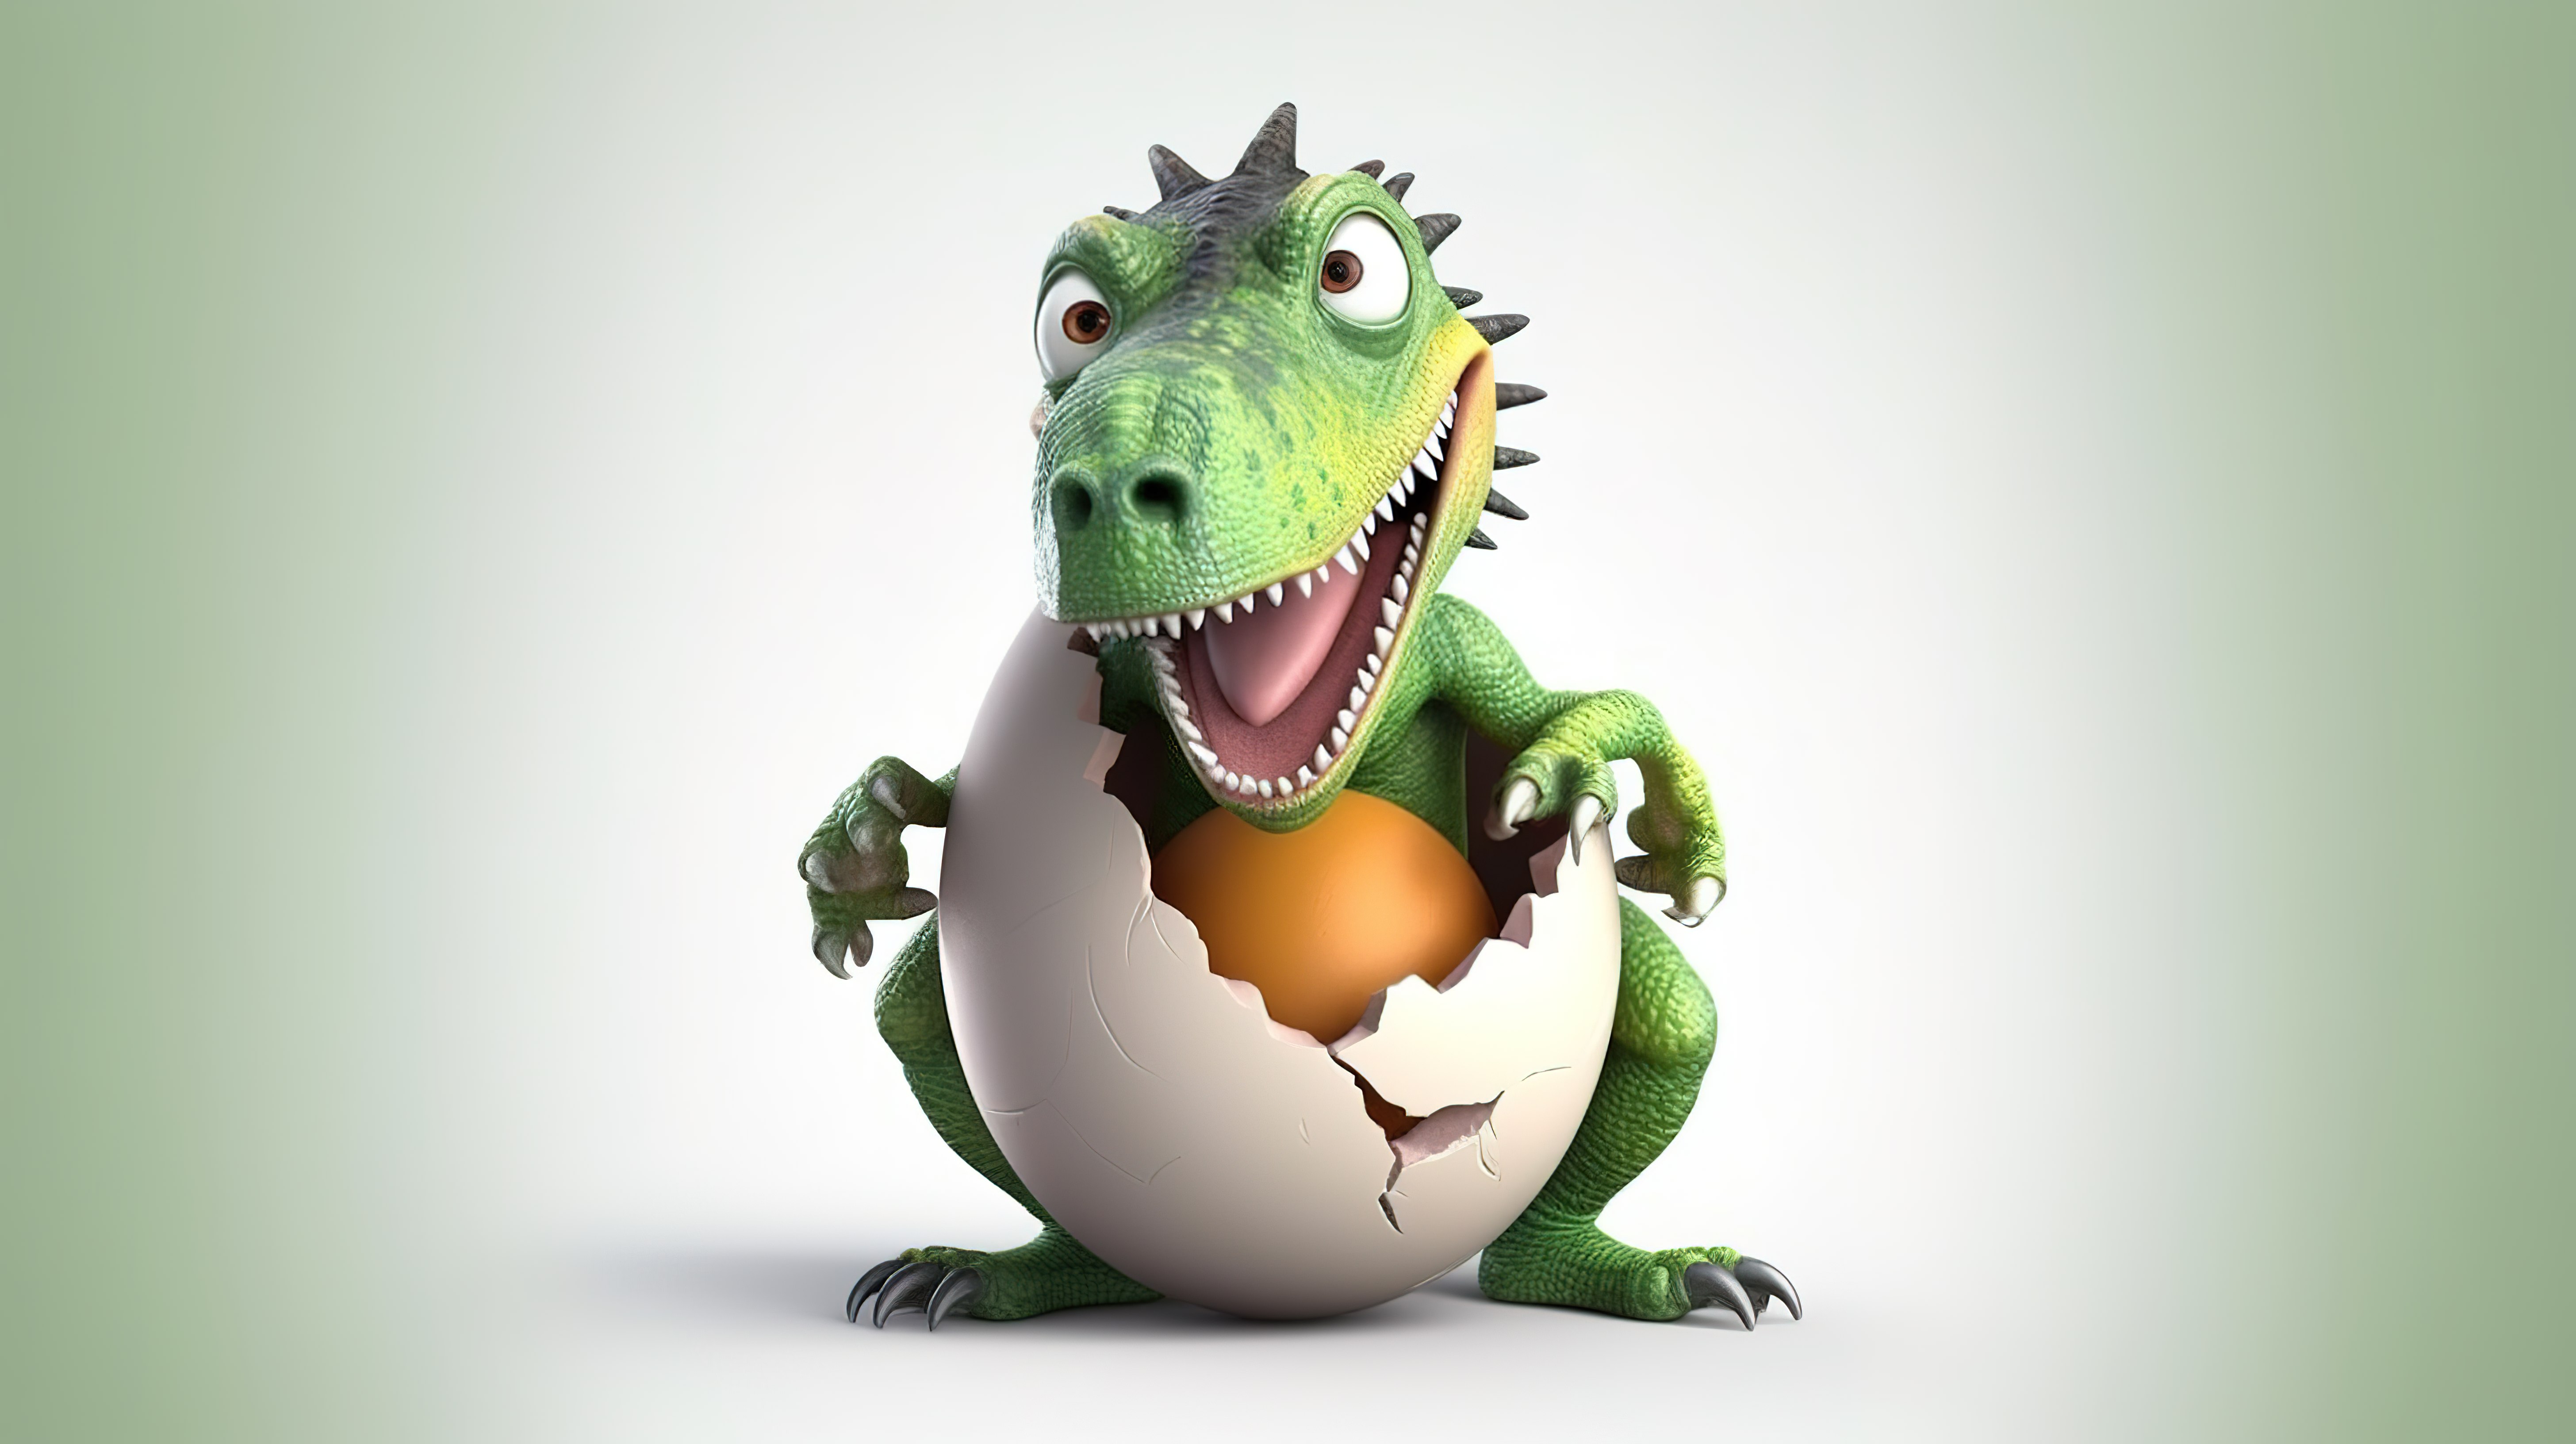 搞笑的 3D 恐龙人物抓着一个巨大的鸡蛋图片